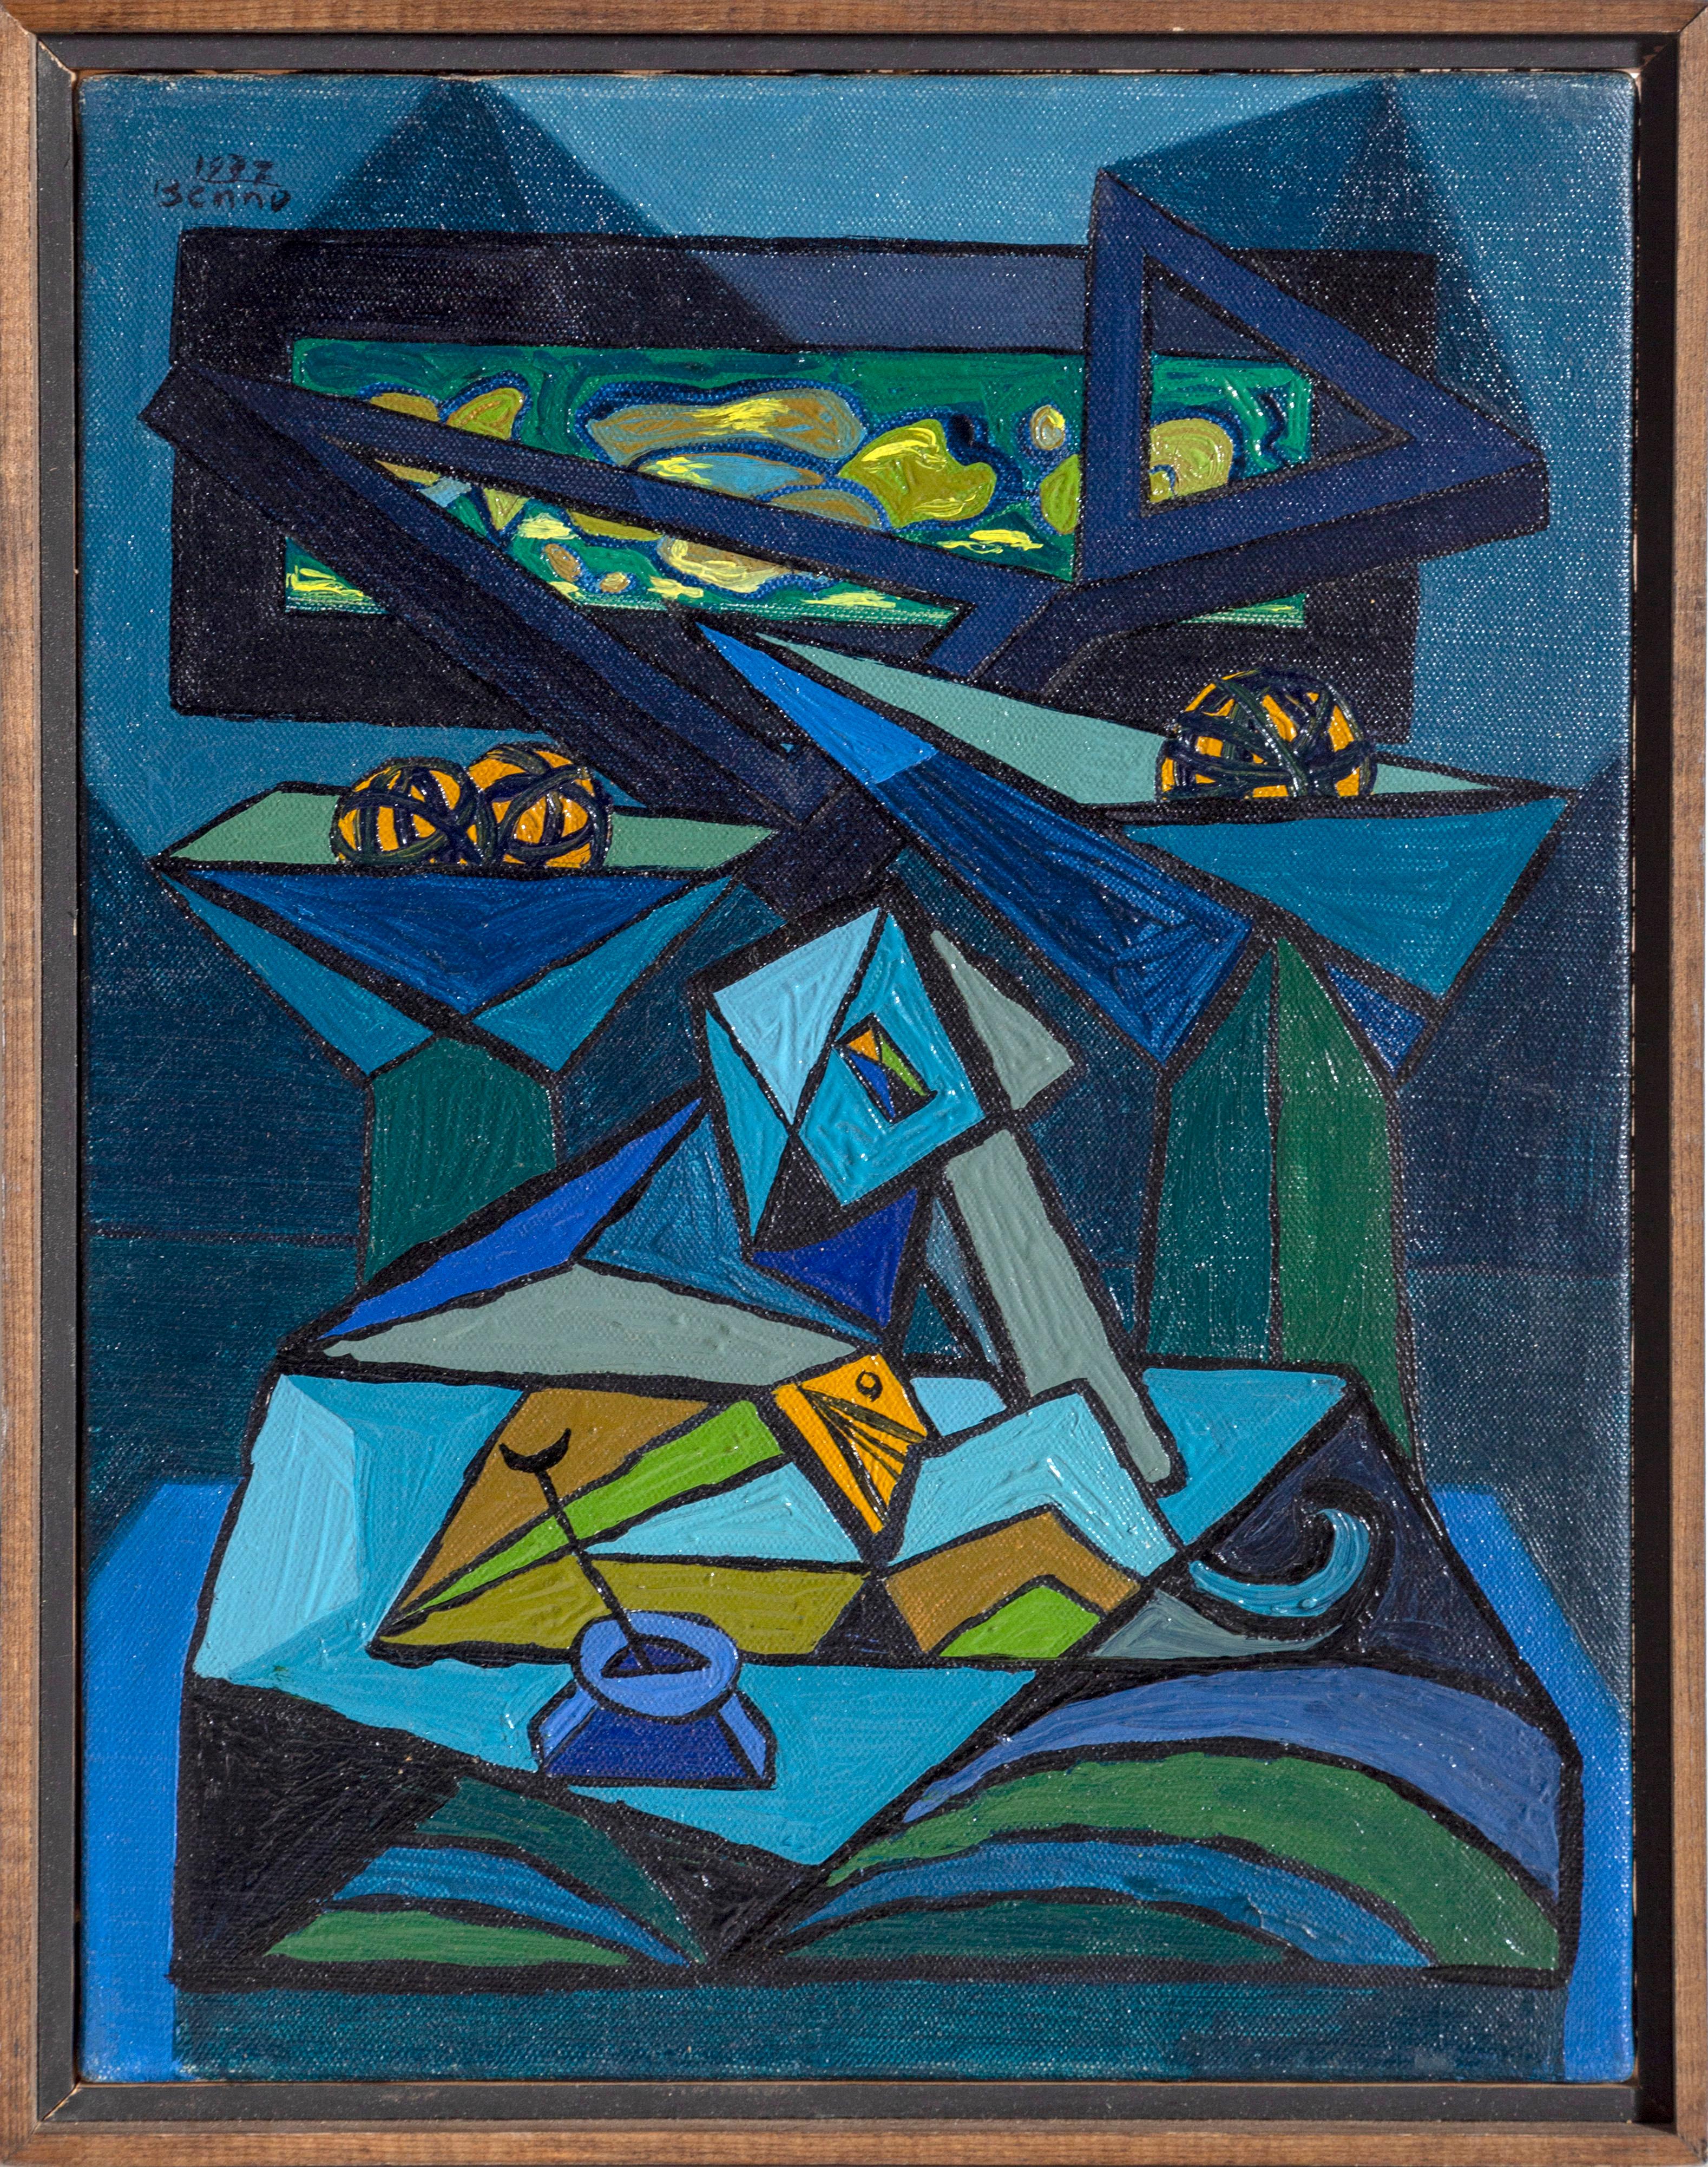 Interieur n° 1, peinture cubiste de Benno 1937